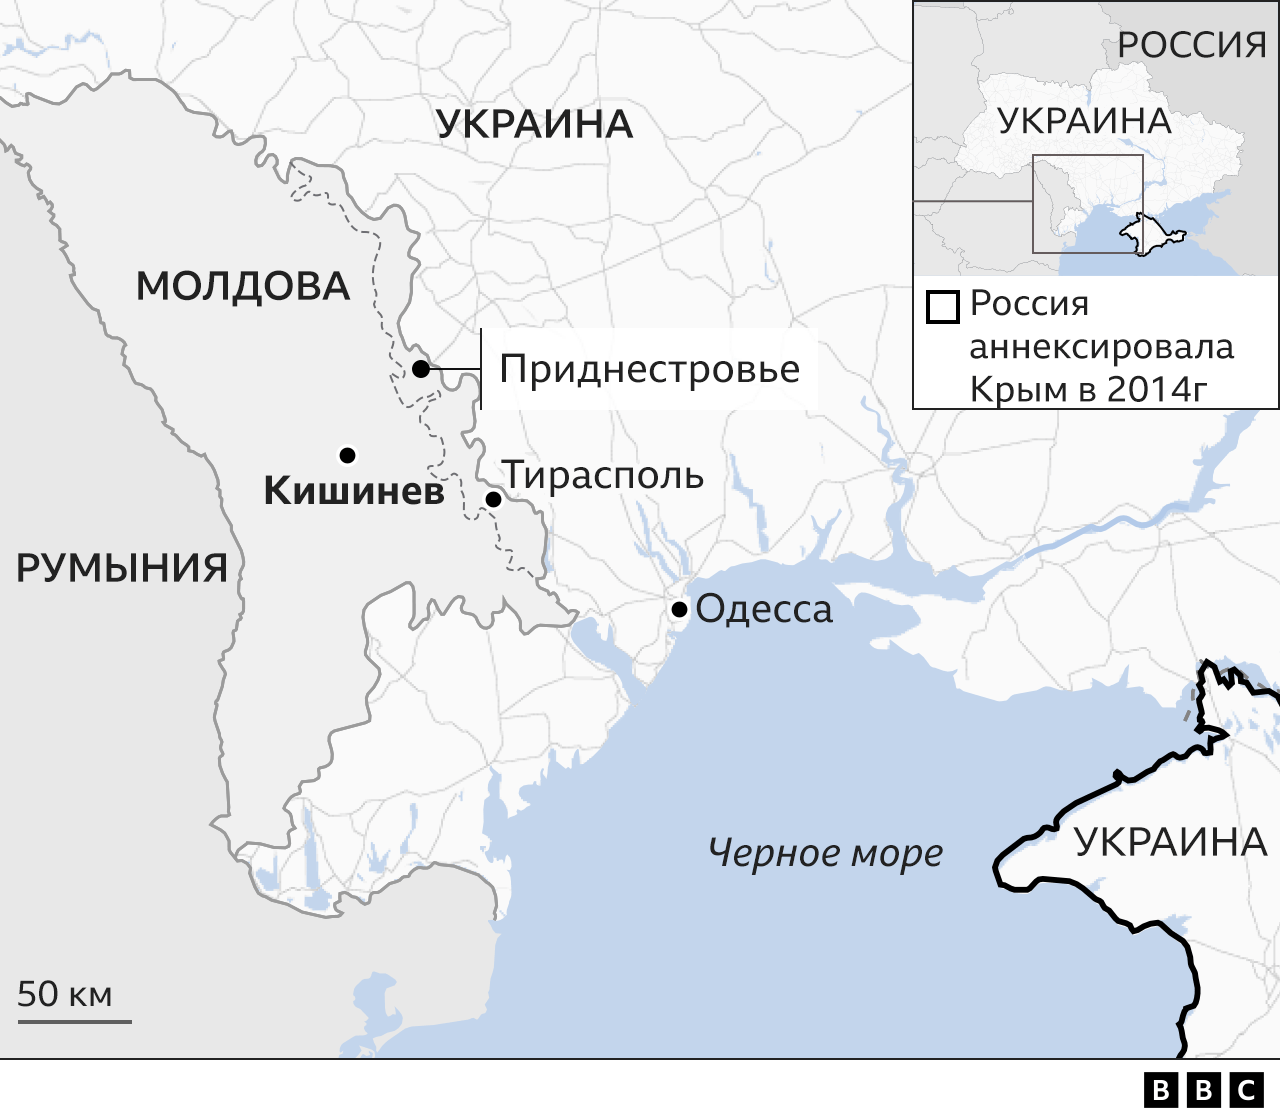 Карта Молдовы с прилегающими районами